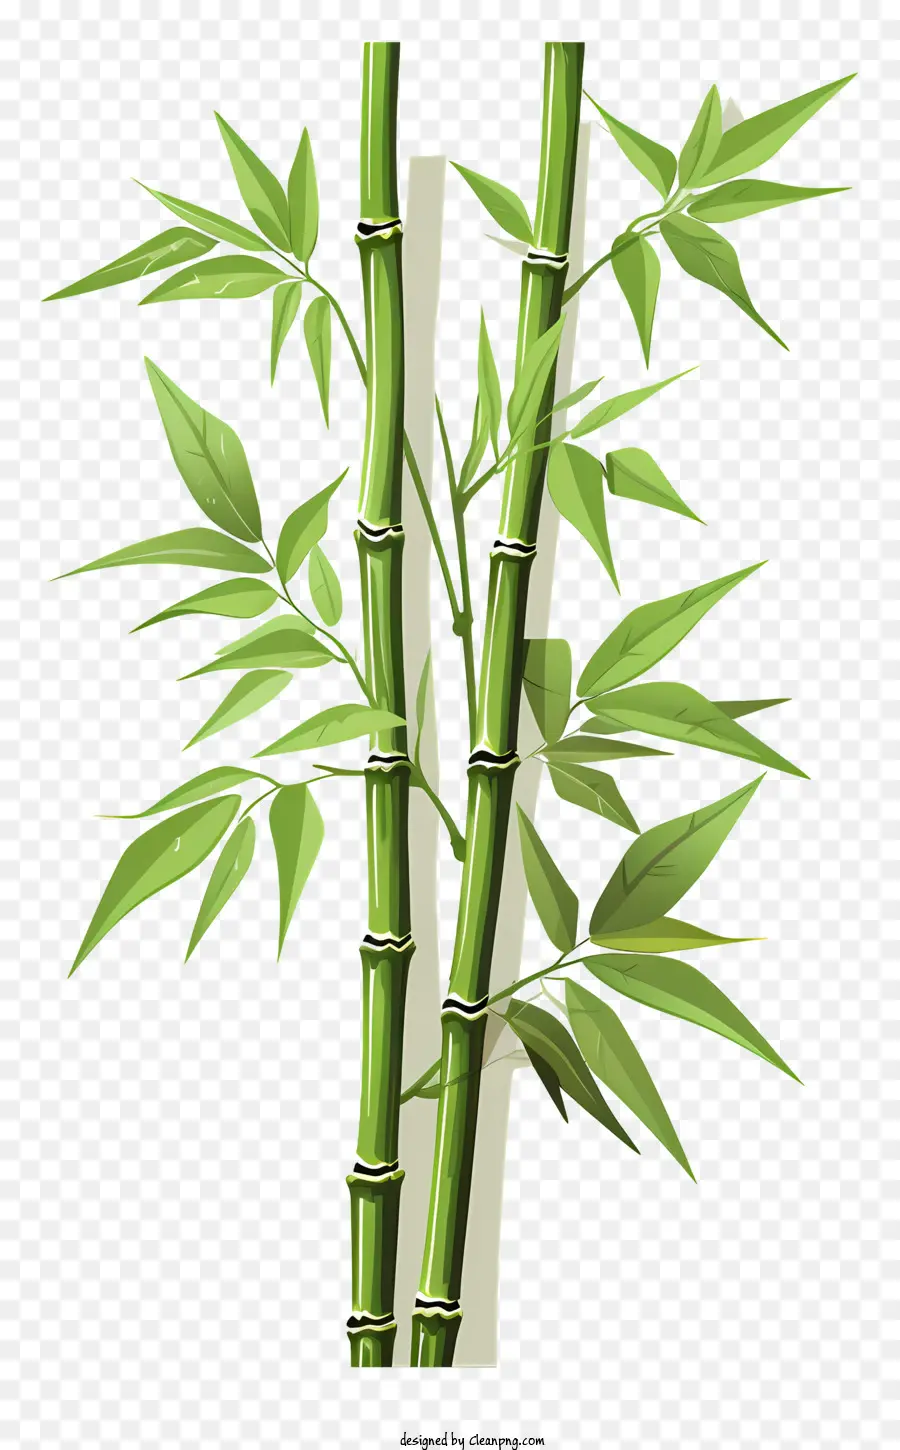 pianta di bambù di bambù disegnata a mano foglie di bambù gambi vera pianta - Incerto se vera o disegnata pianta di bambù